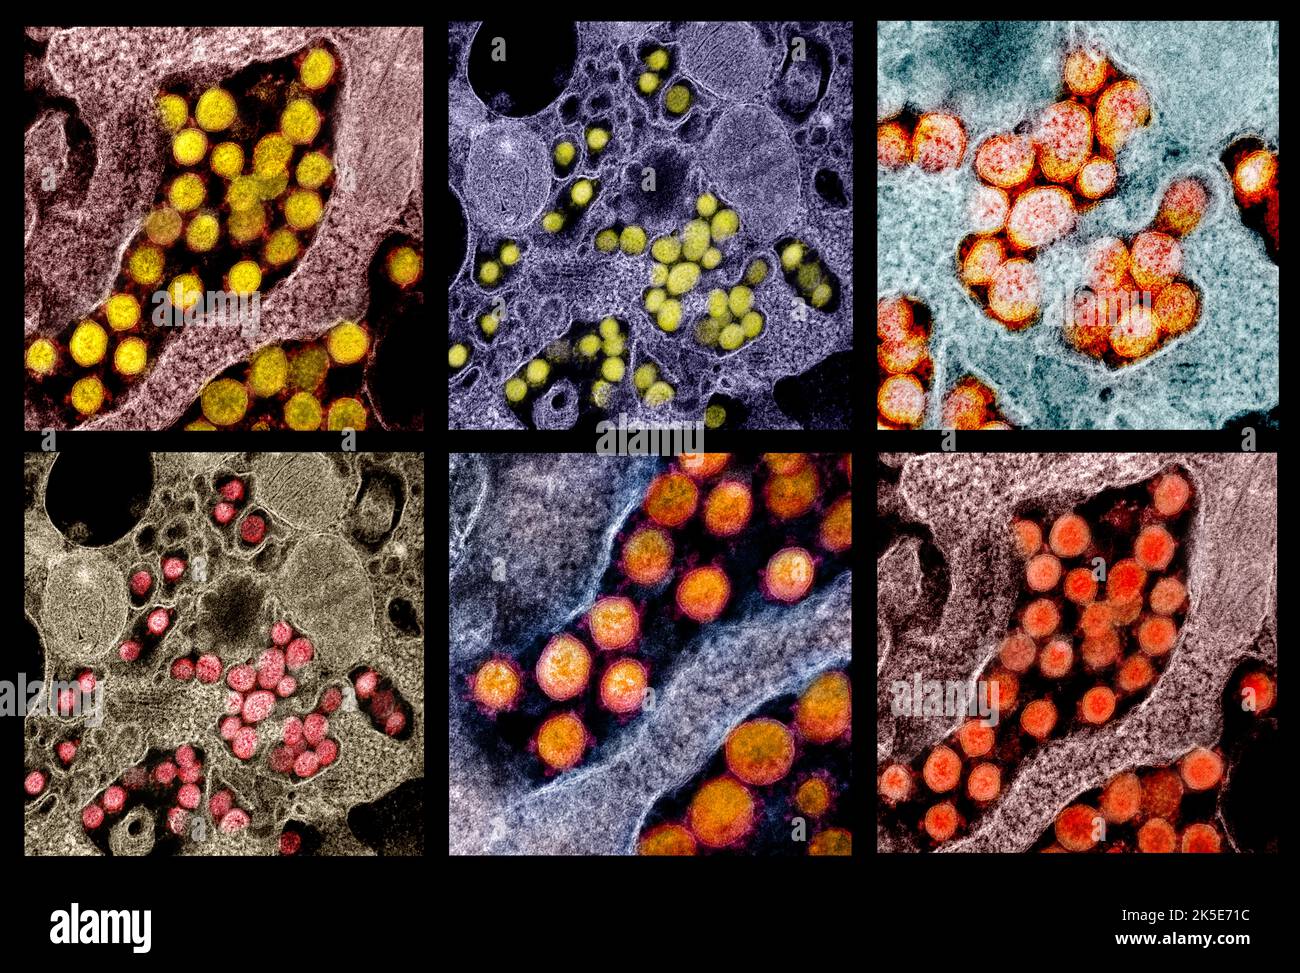 Eine Zusammenstellung von Bildern des neuartigen Coronavirus SARS-CoV-2. Transmissionselektronenmikroskope von SARS-CoV-2-Viruspartikeln, isoliert von einem Patienten. Eine optimierte und verbesserte, einzigartige Composite-Version von sechs Rasterelektronenmikrographen-Bildern, Quelle: NIAID Stockfoto